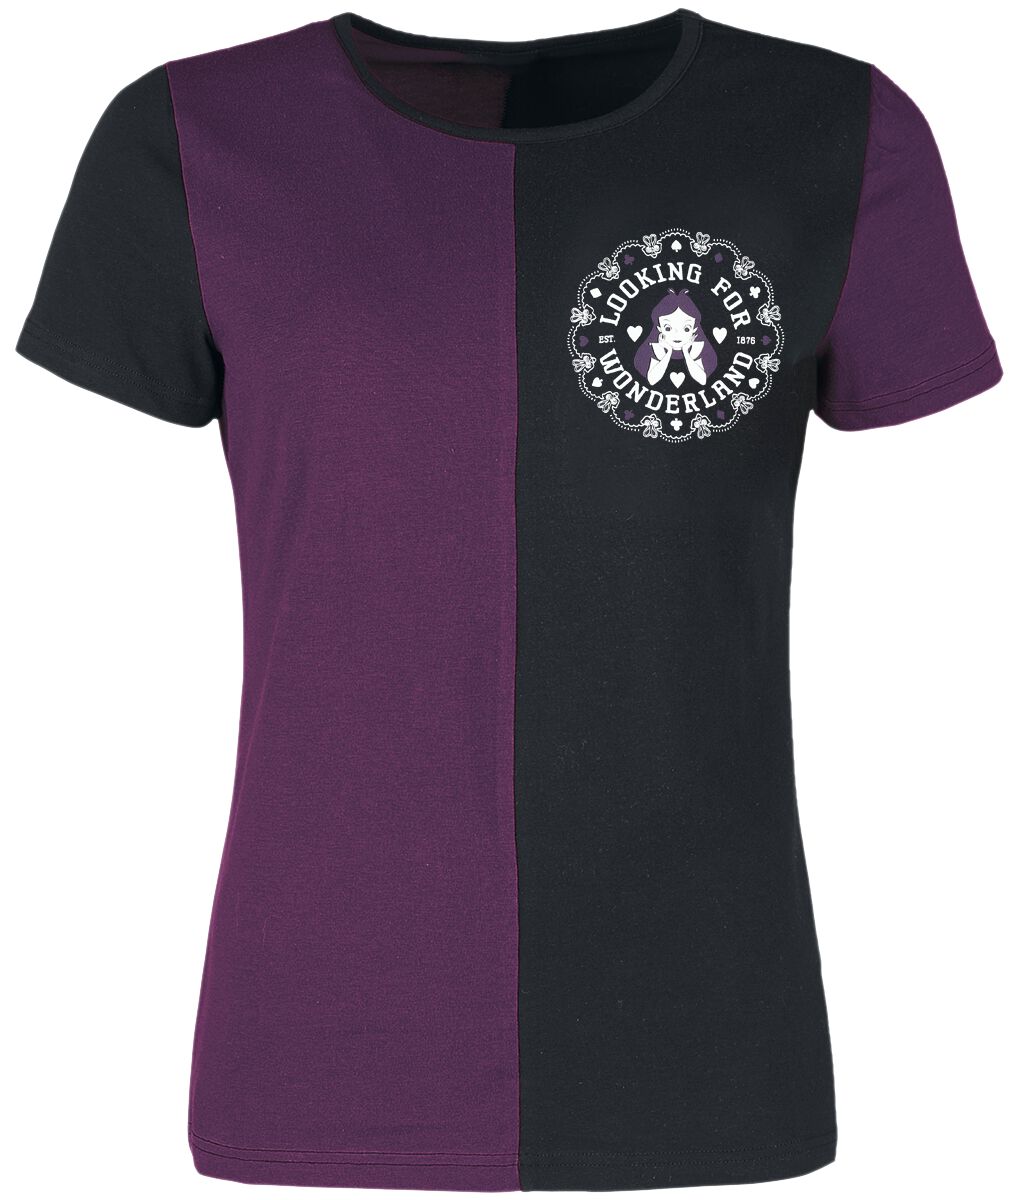 Alice im Wunderland - Disney T-Shirt - University - S bis L - für Damen - Größe L - lila/schwarz  - Lizenzierter Fanartikel